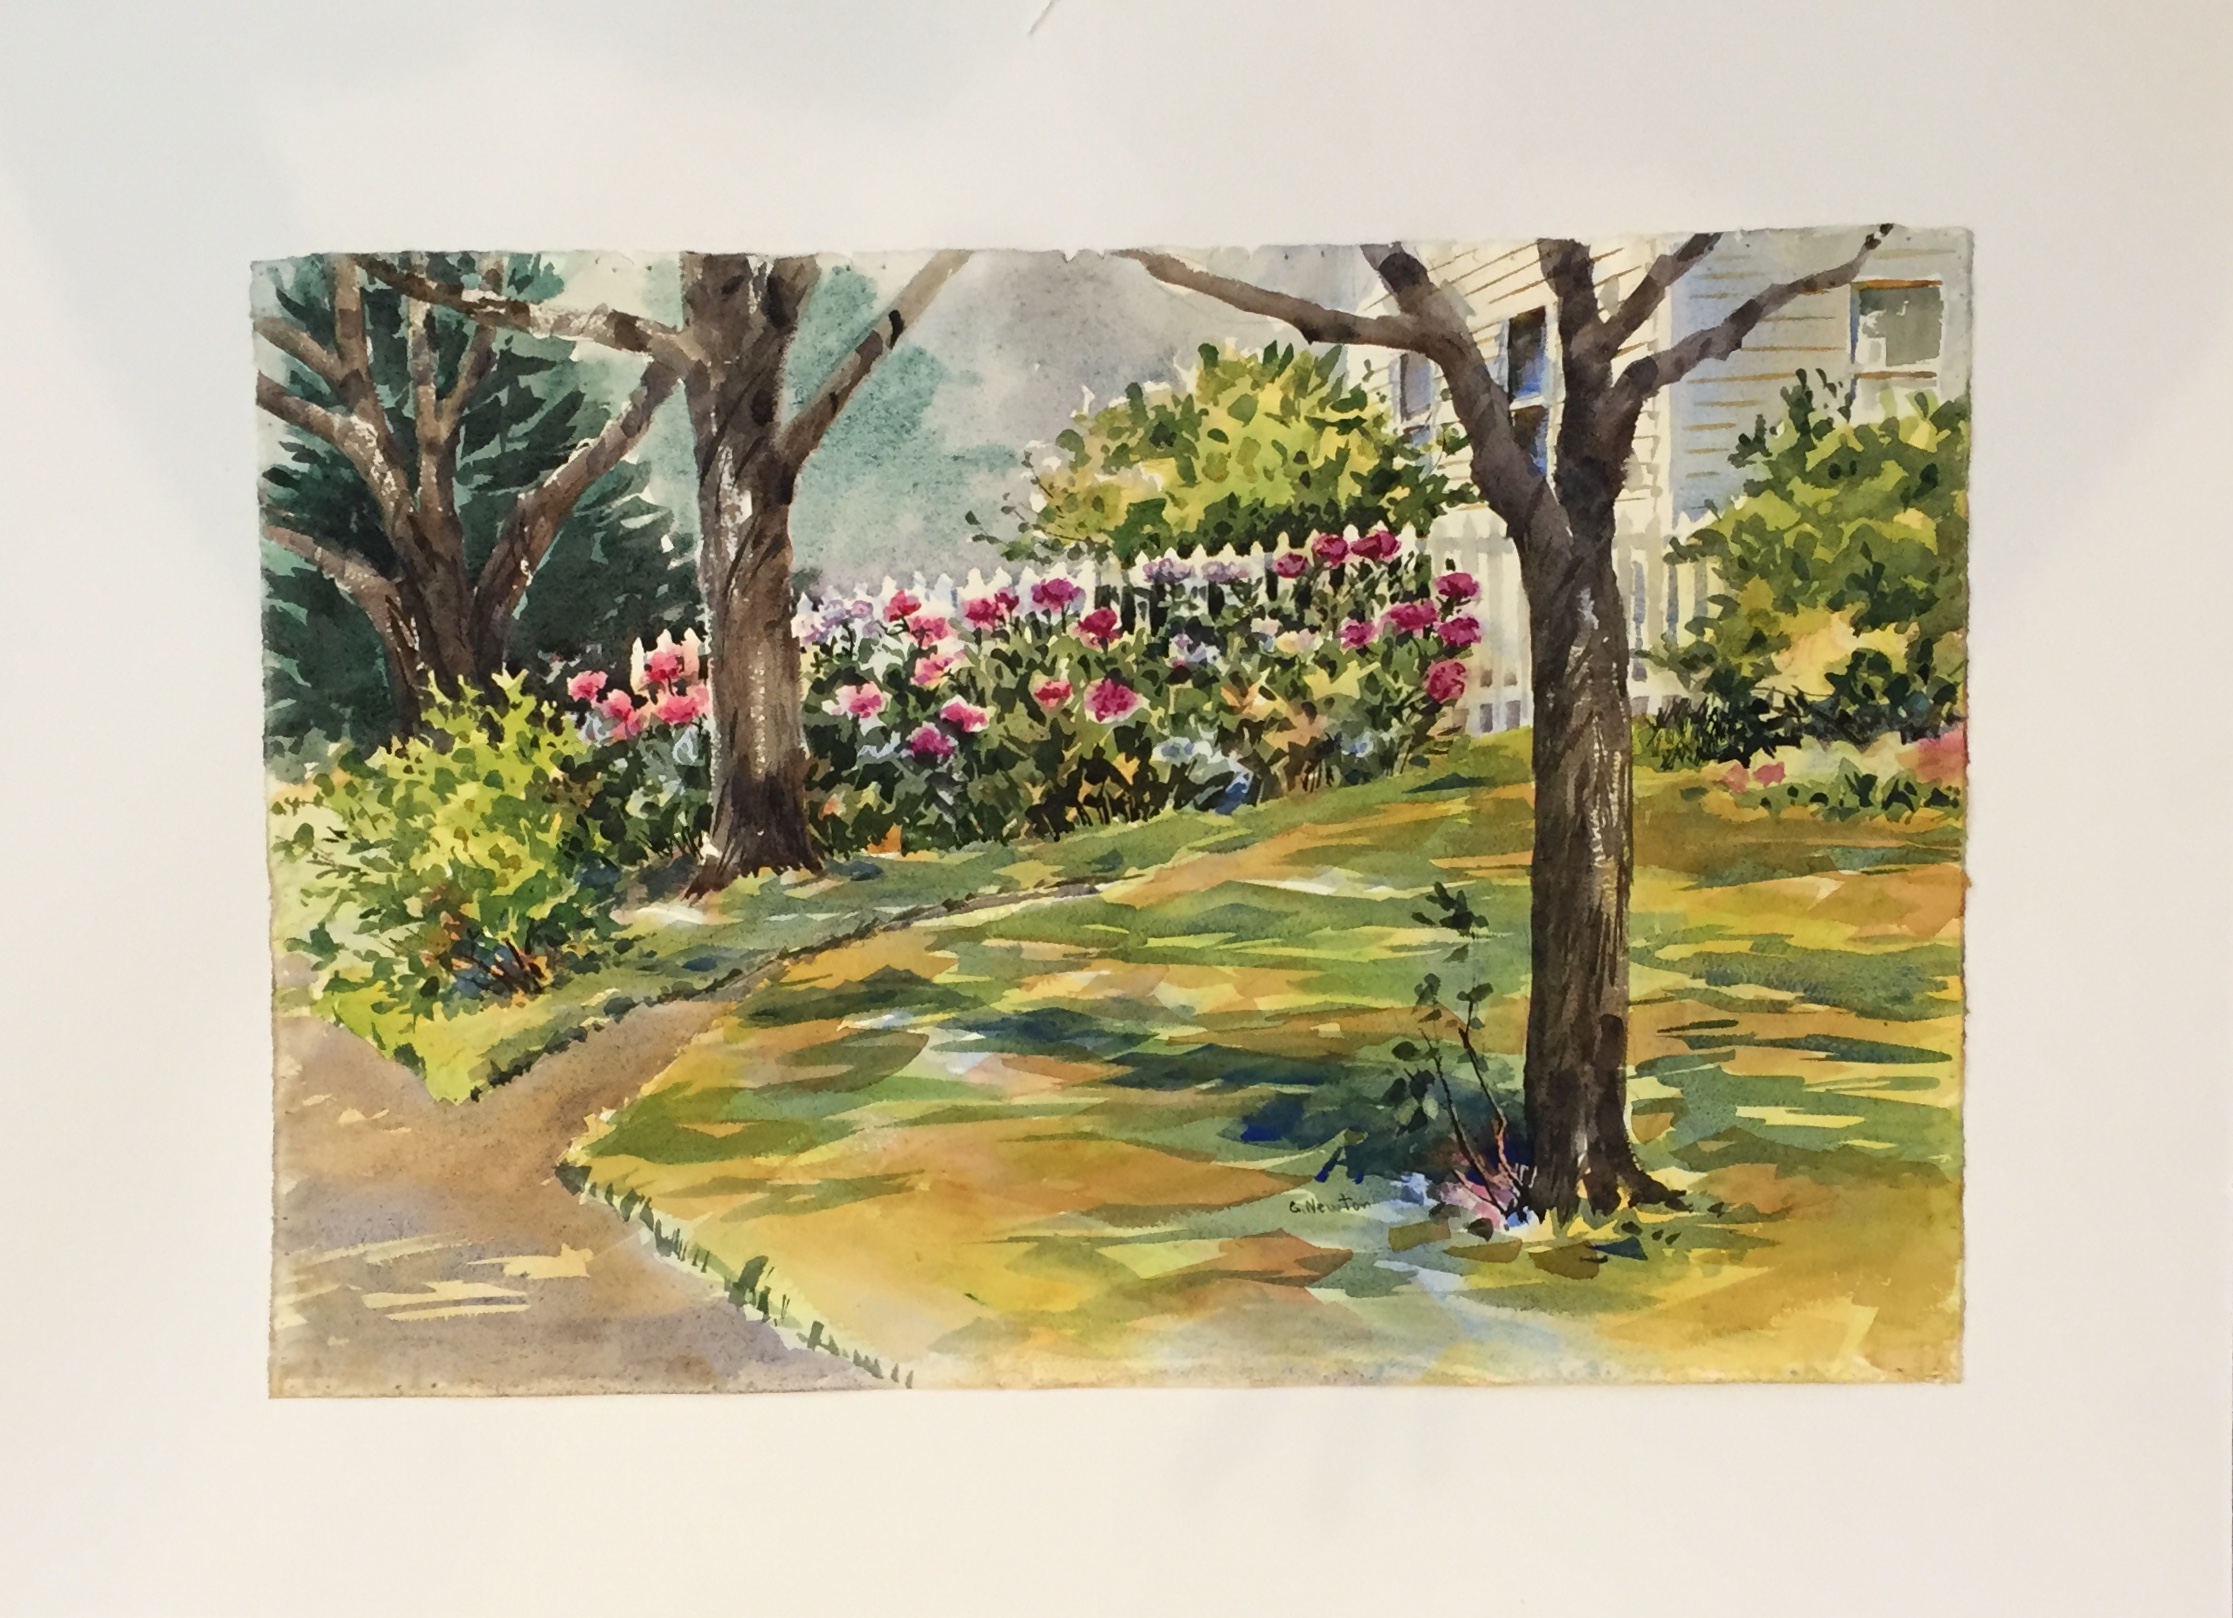 Georgia Newton
Garden
Watercolor
23" X 15"
$150. framed
